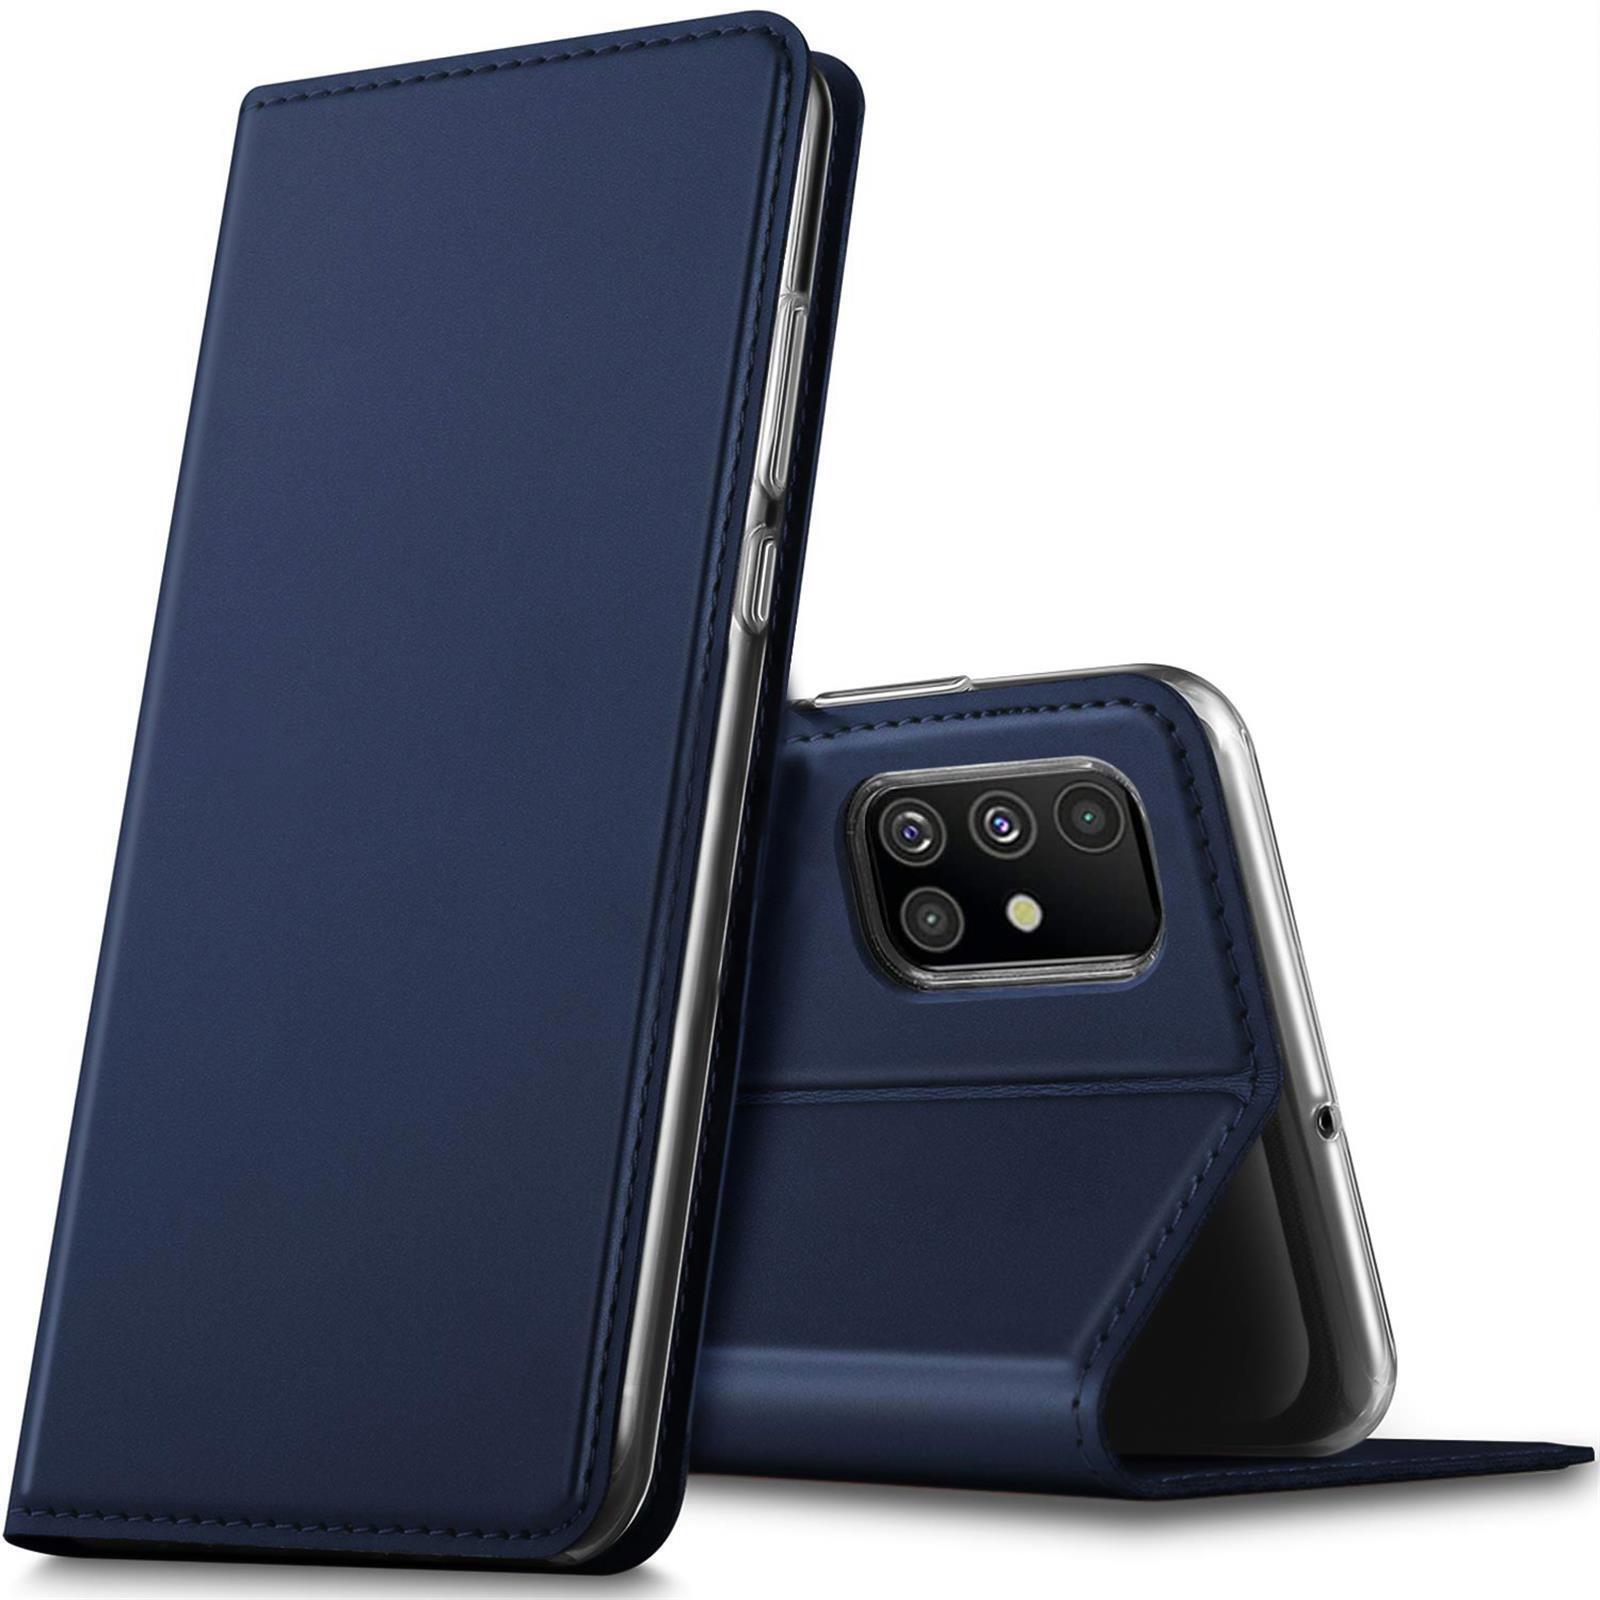 Flip Case Für Samsung Galaxy A51 Schutz Hülle Handy Tasche Klapphülle Slim Etui